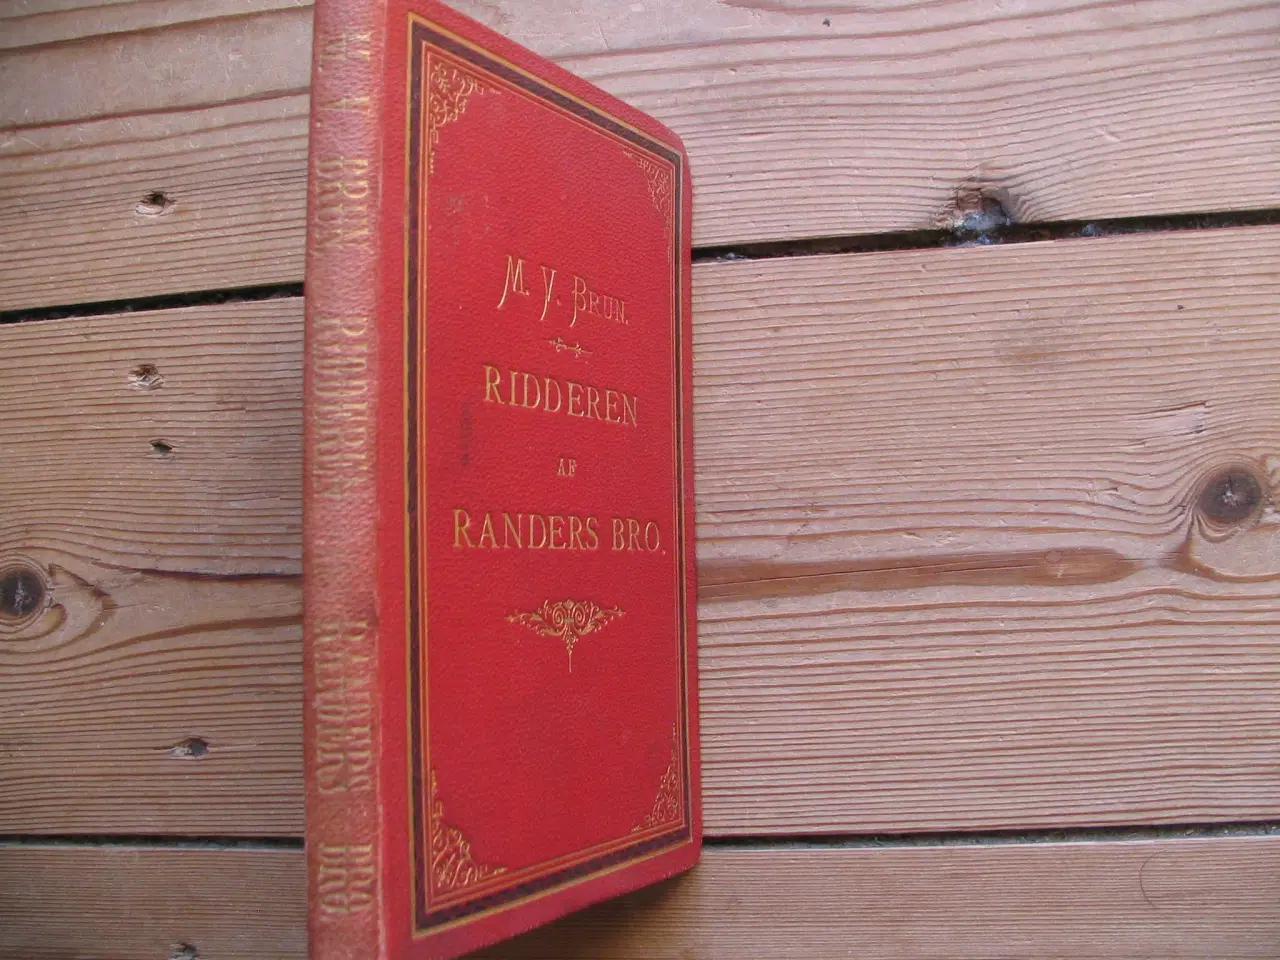 Billede 2 - M.V. Brun. Ridderen af Randers kro, fra 1881